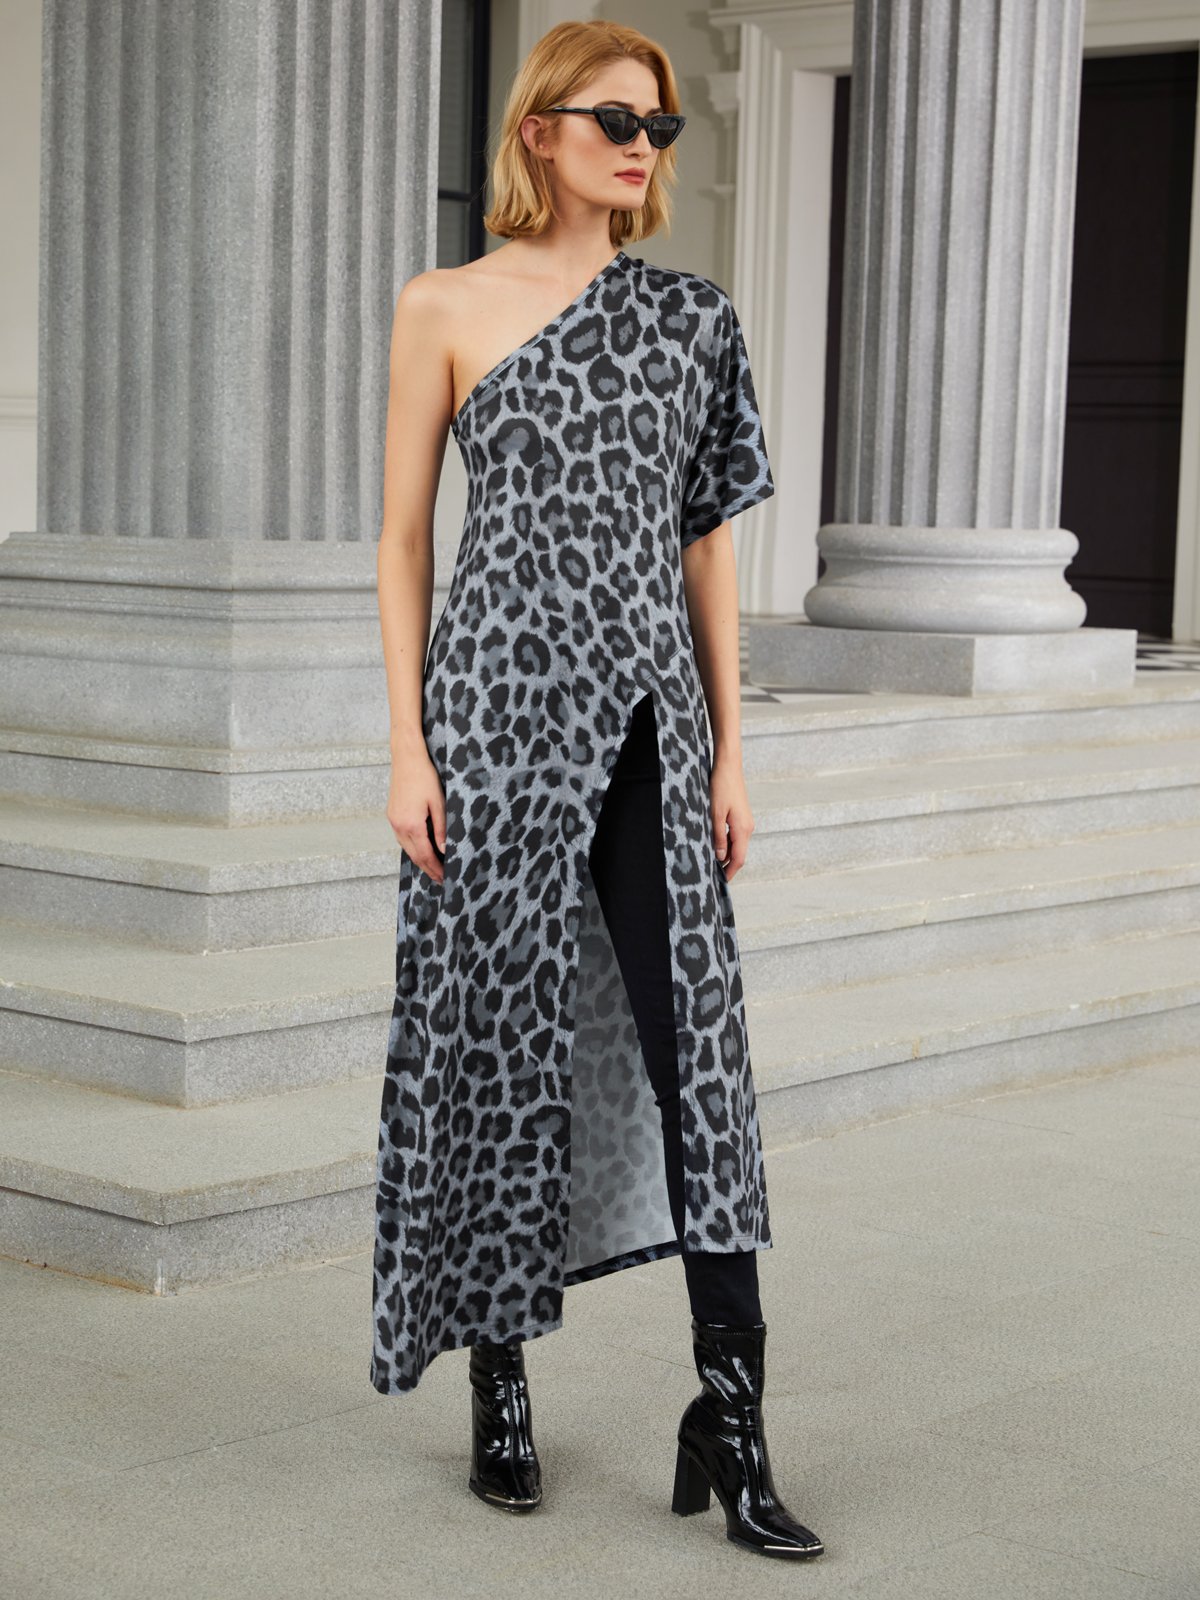 Urlaub Print Leopard Bluse mit Halbarm